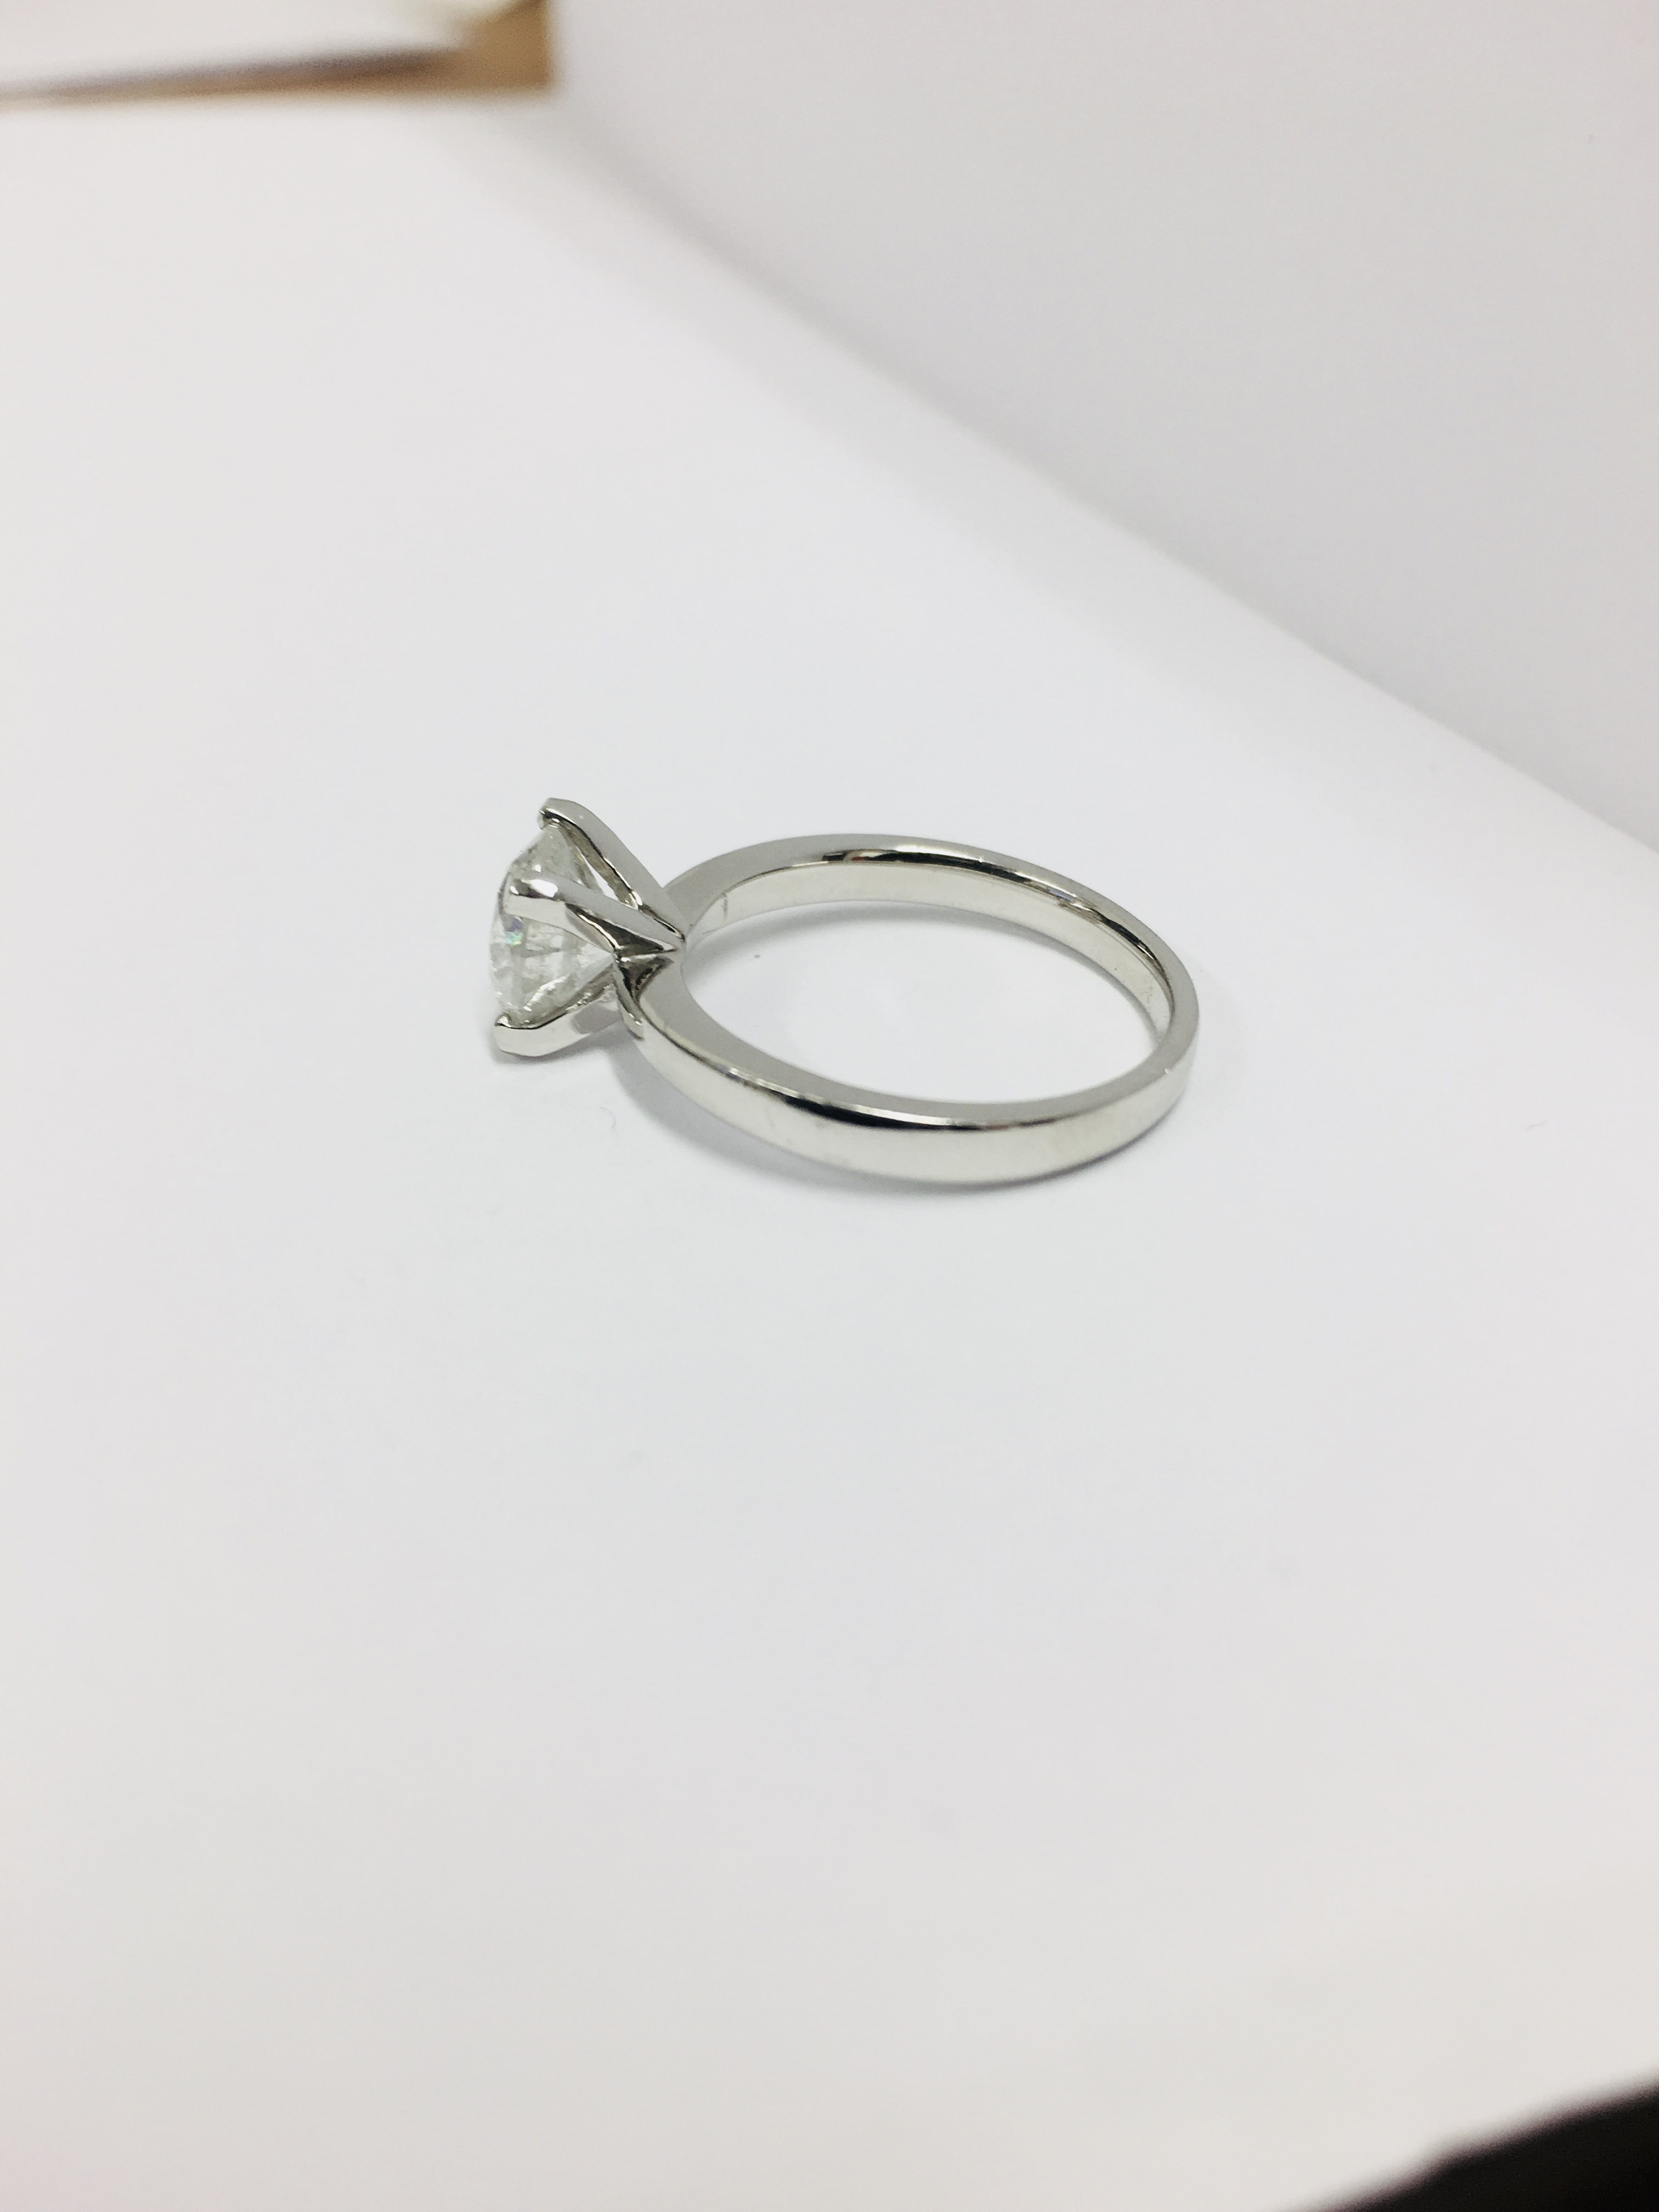 2.08ct diamond solitaire ring set in platinum - Image 28 of 48